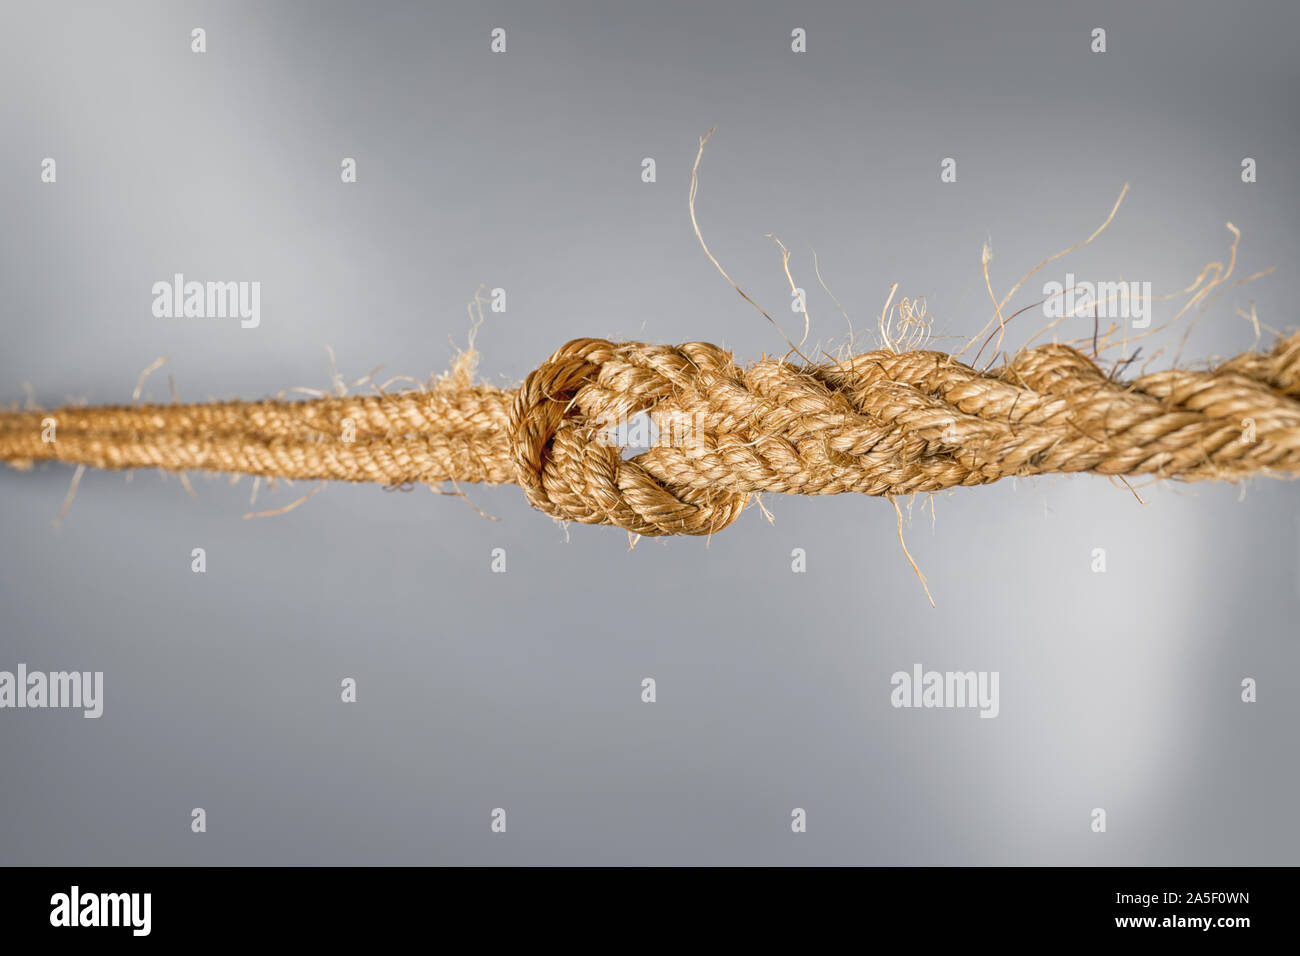 Les cordes solides reliés par des nœuds liés sur fond gris. Selective focus Banque D'Images